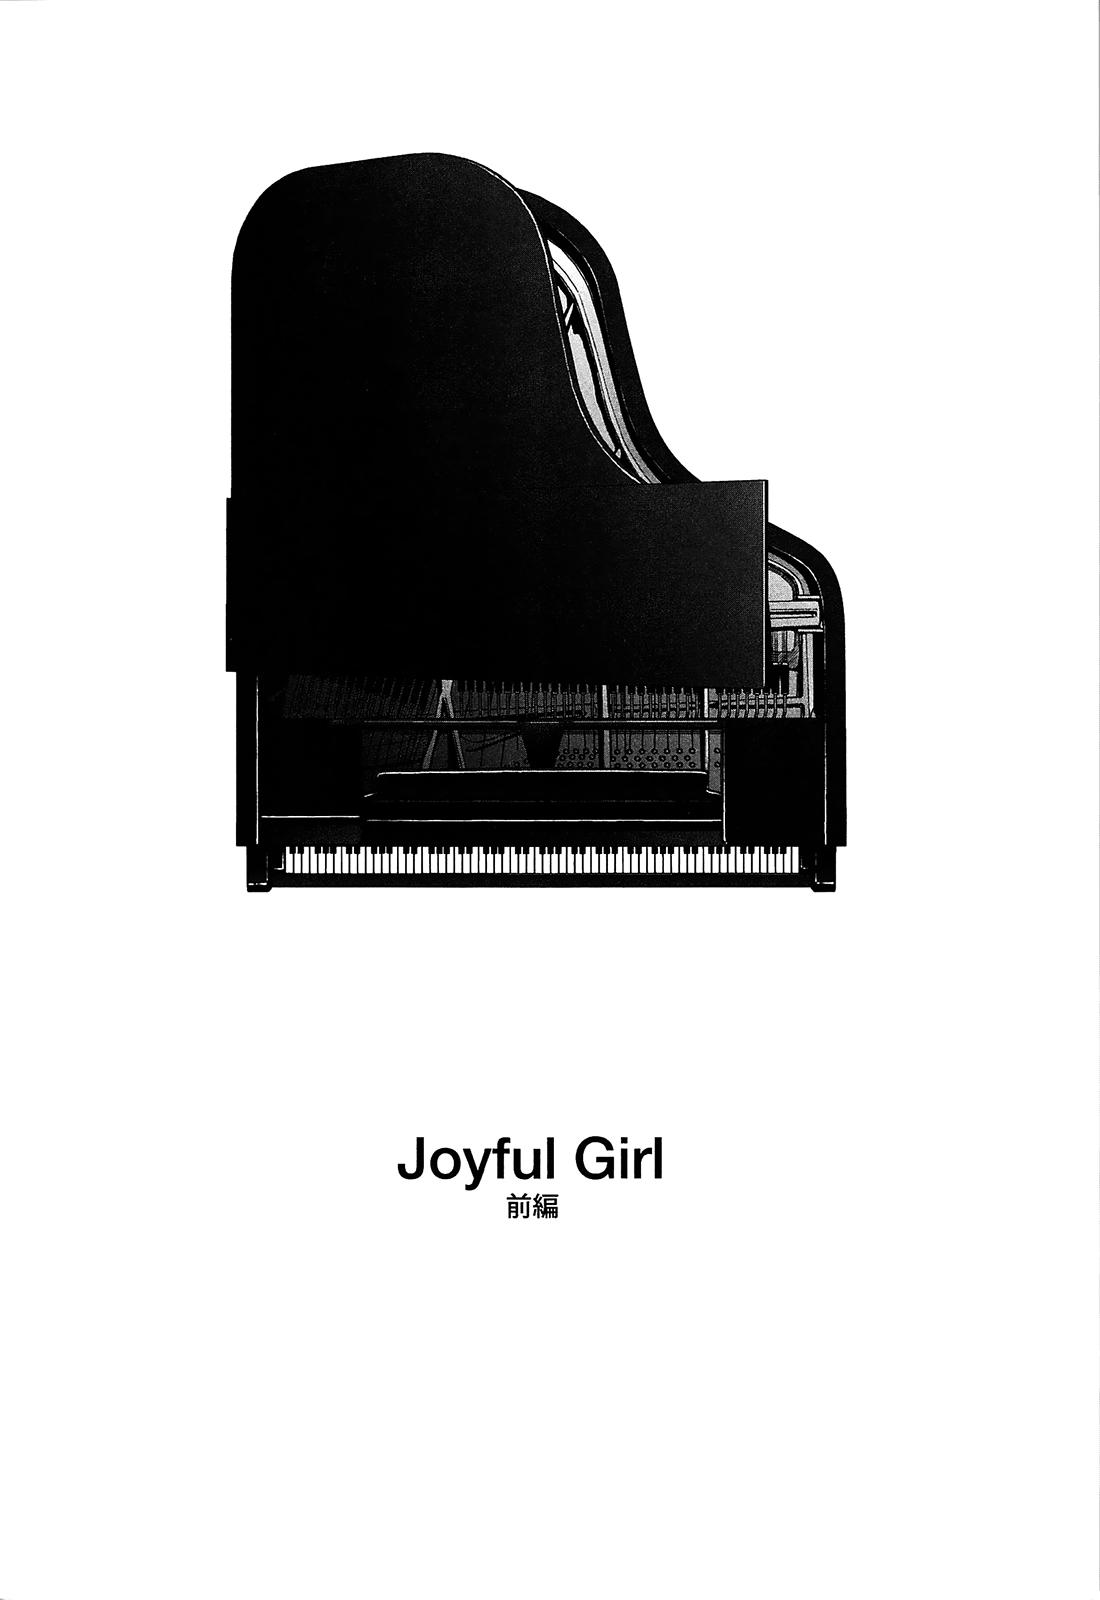 Exhibition Joyful Girl Animated - Page 2